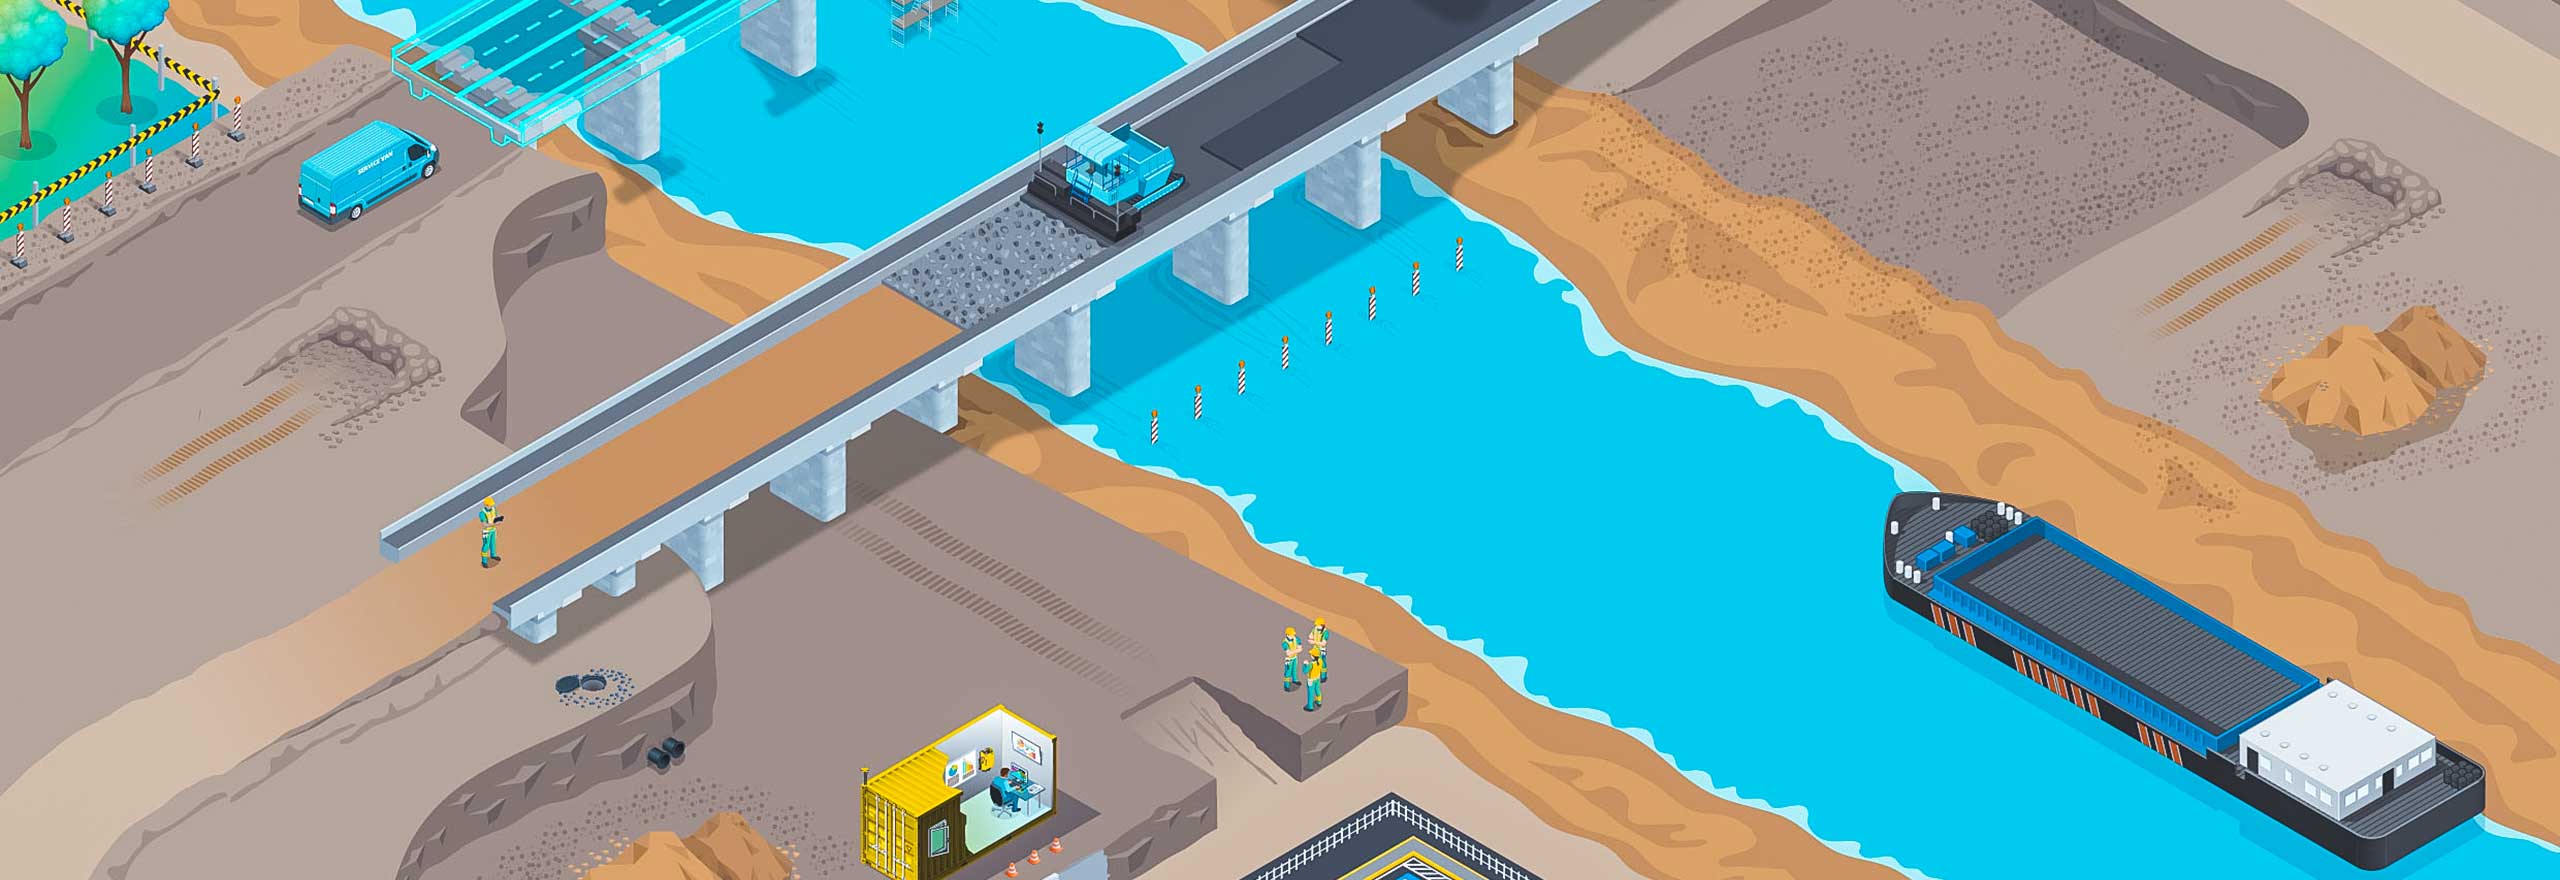 Ilustração de uma ponte com um navio cargueiro